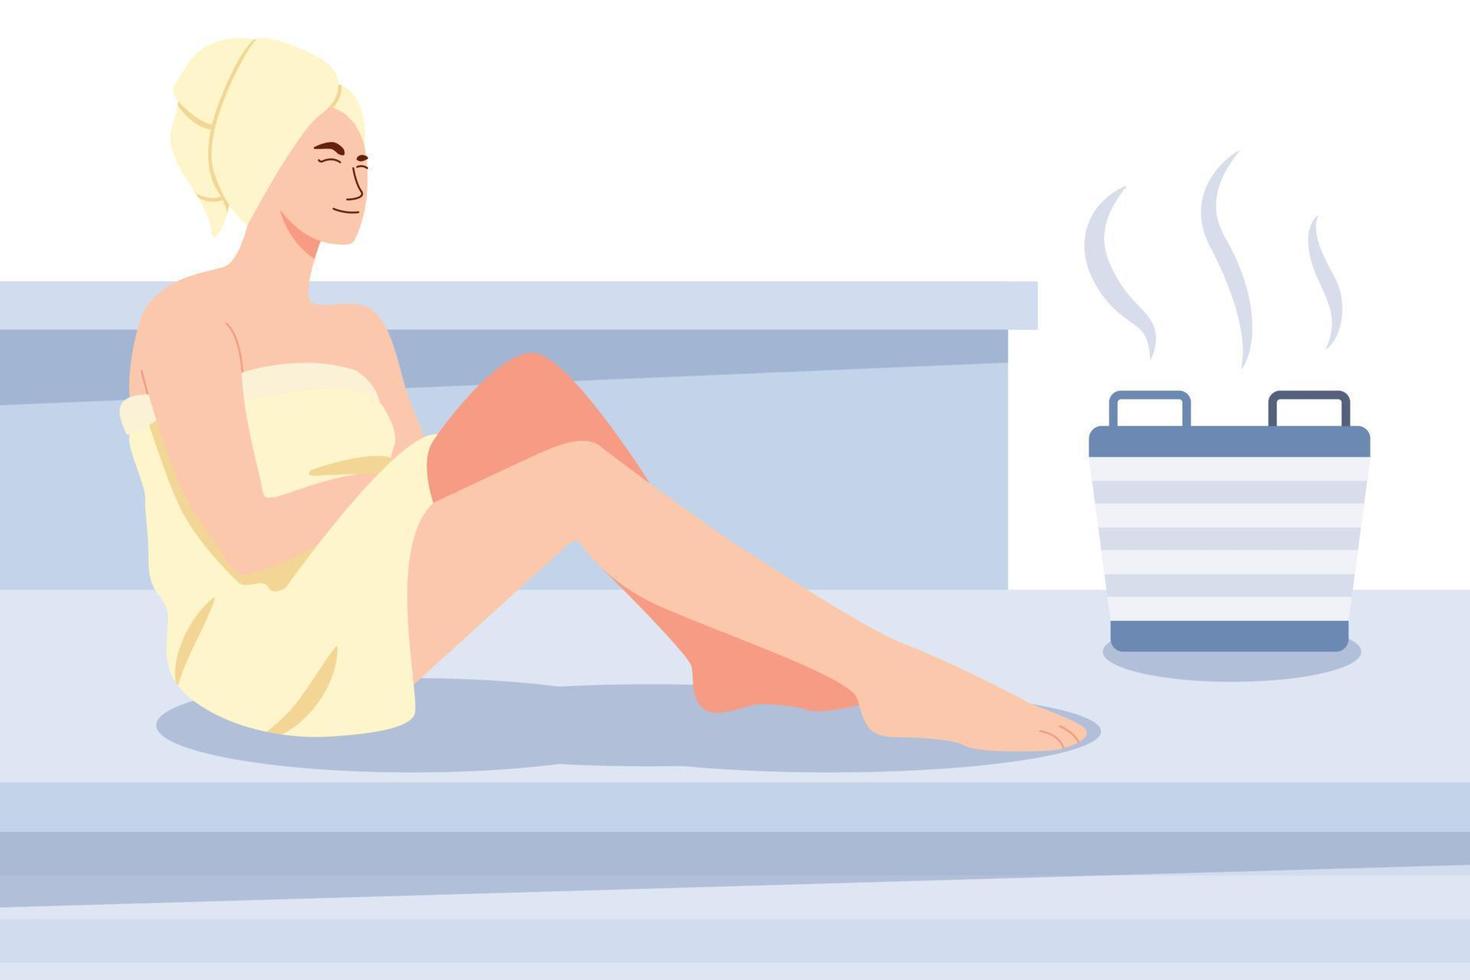 mulher relaxante sauna no spa, balneário ou sauna de vapor quente, terapia de cuidados com o corpo, bem-estar, ilustração vetorial de personagens de desenhos animados. vetor